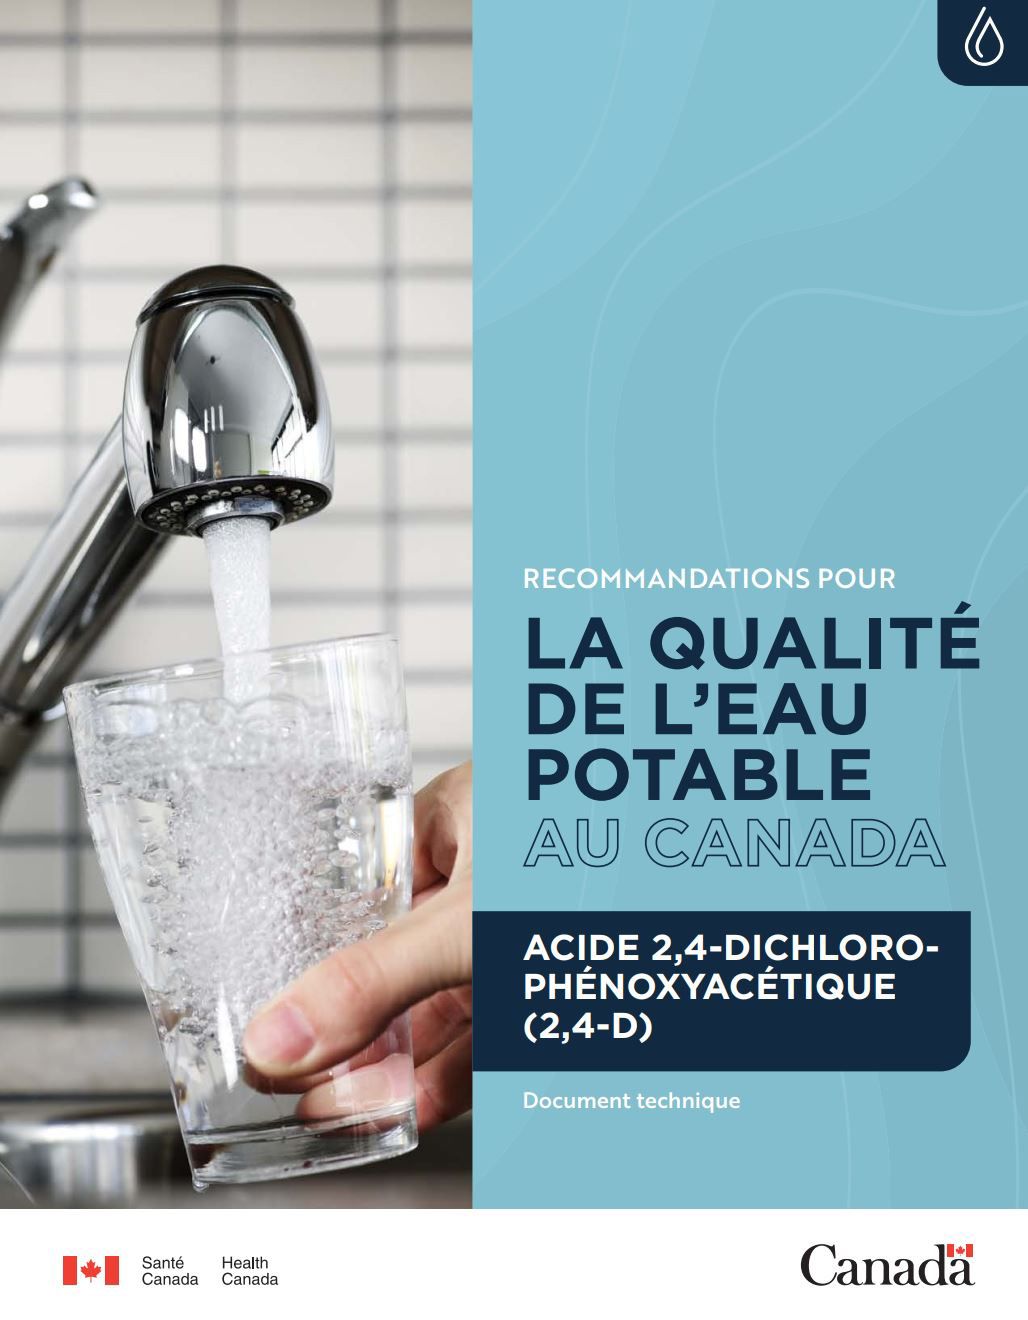 Recommandations pour la qualité de l'eau potable au Canada : document technique – l'acide 2,4-dichlorophénoxyacétique